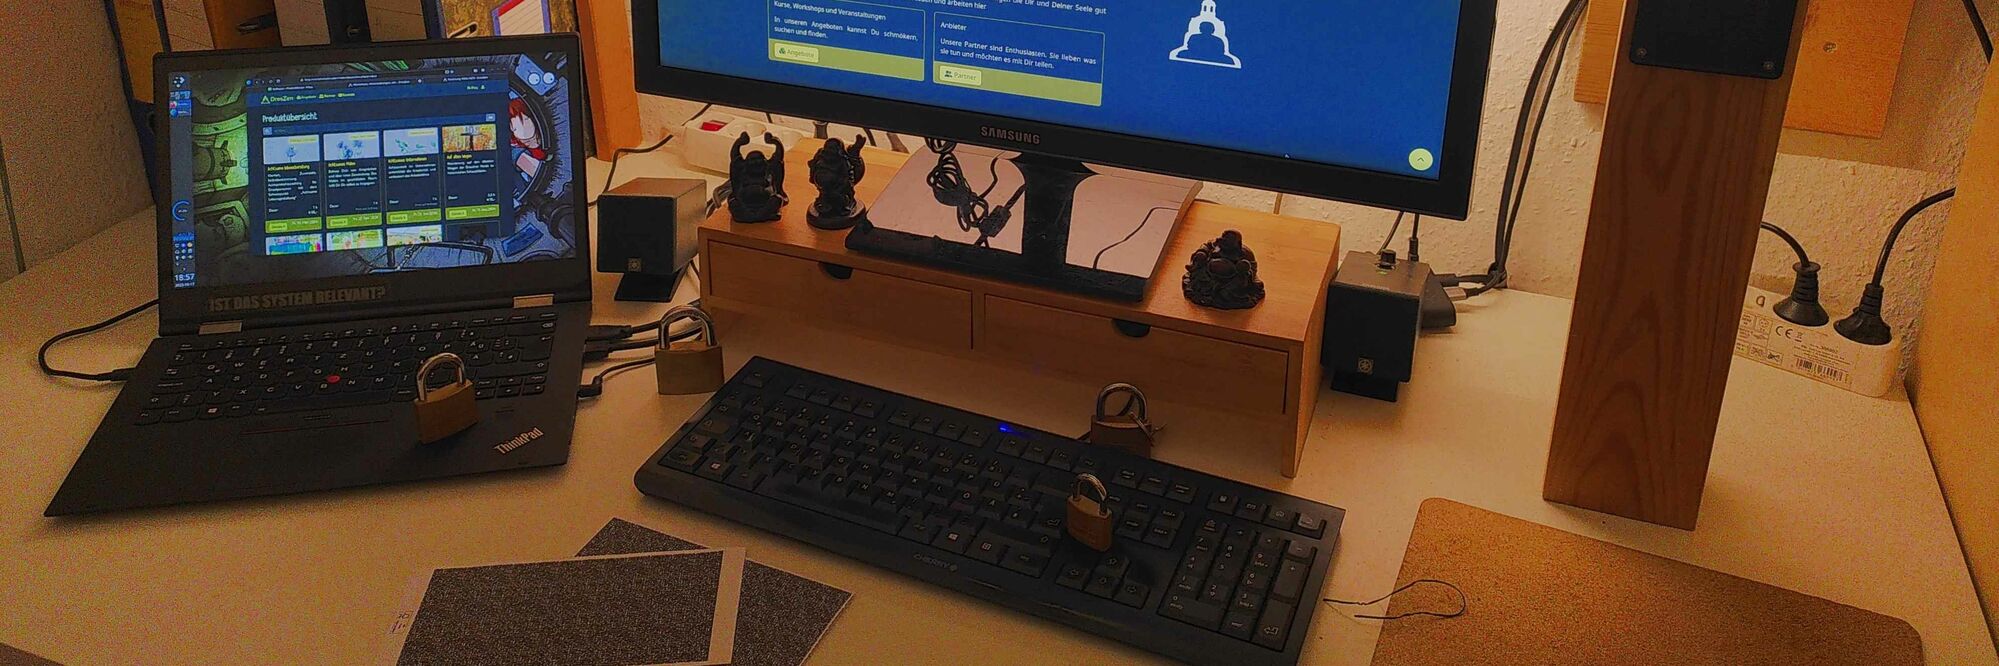 PC / Laptop Tastatur und Monitor mit Vorhängeschlössern